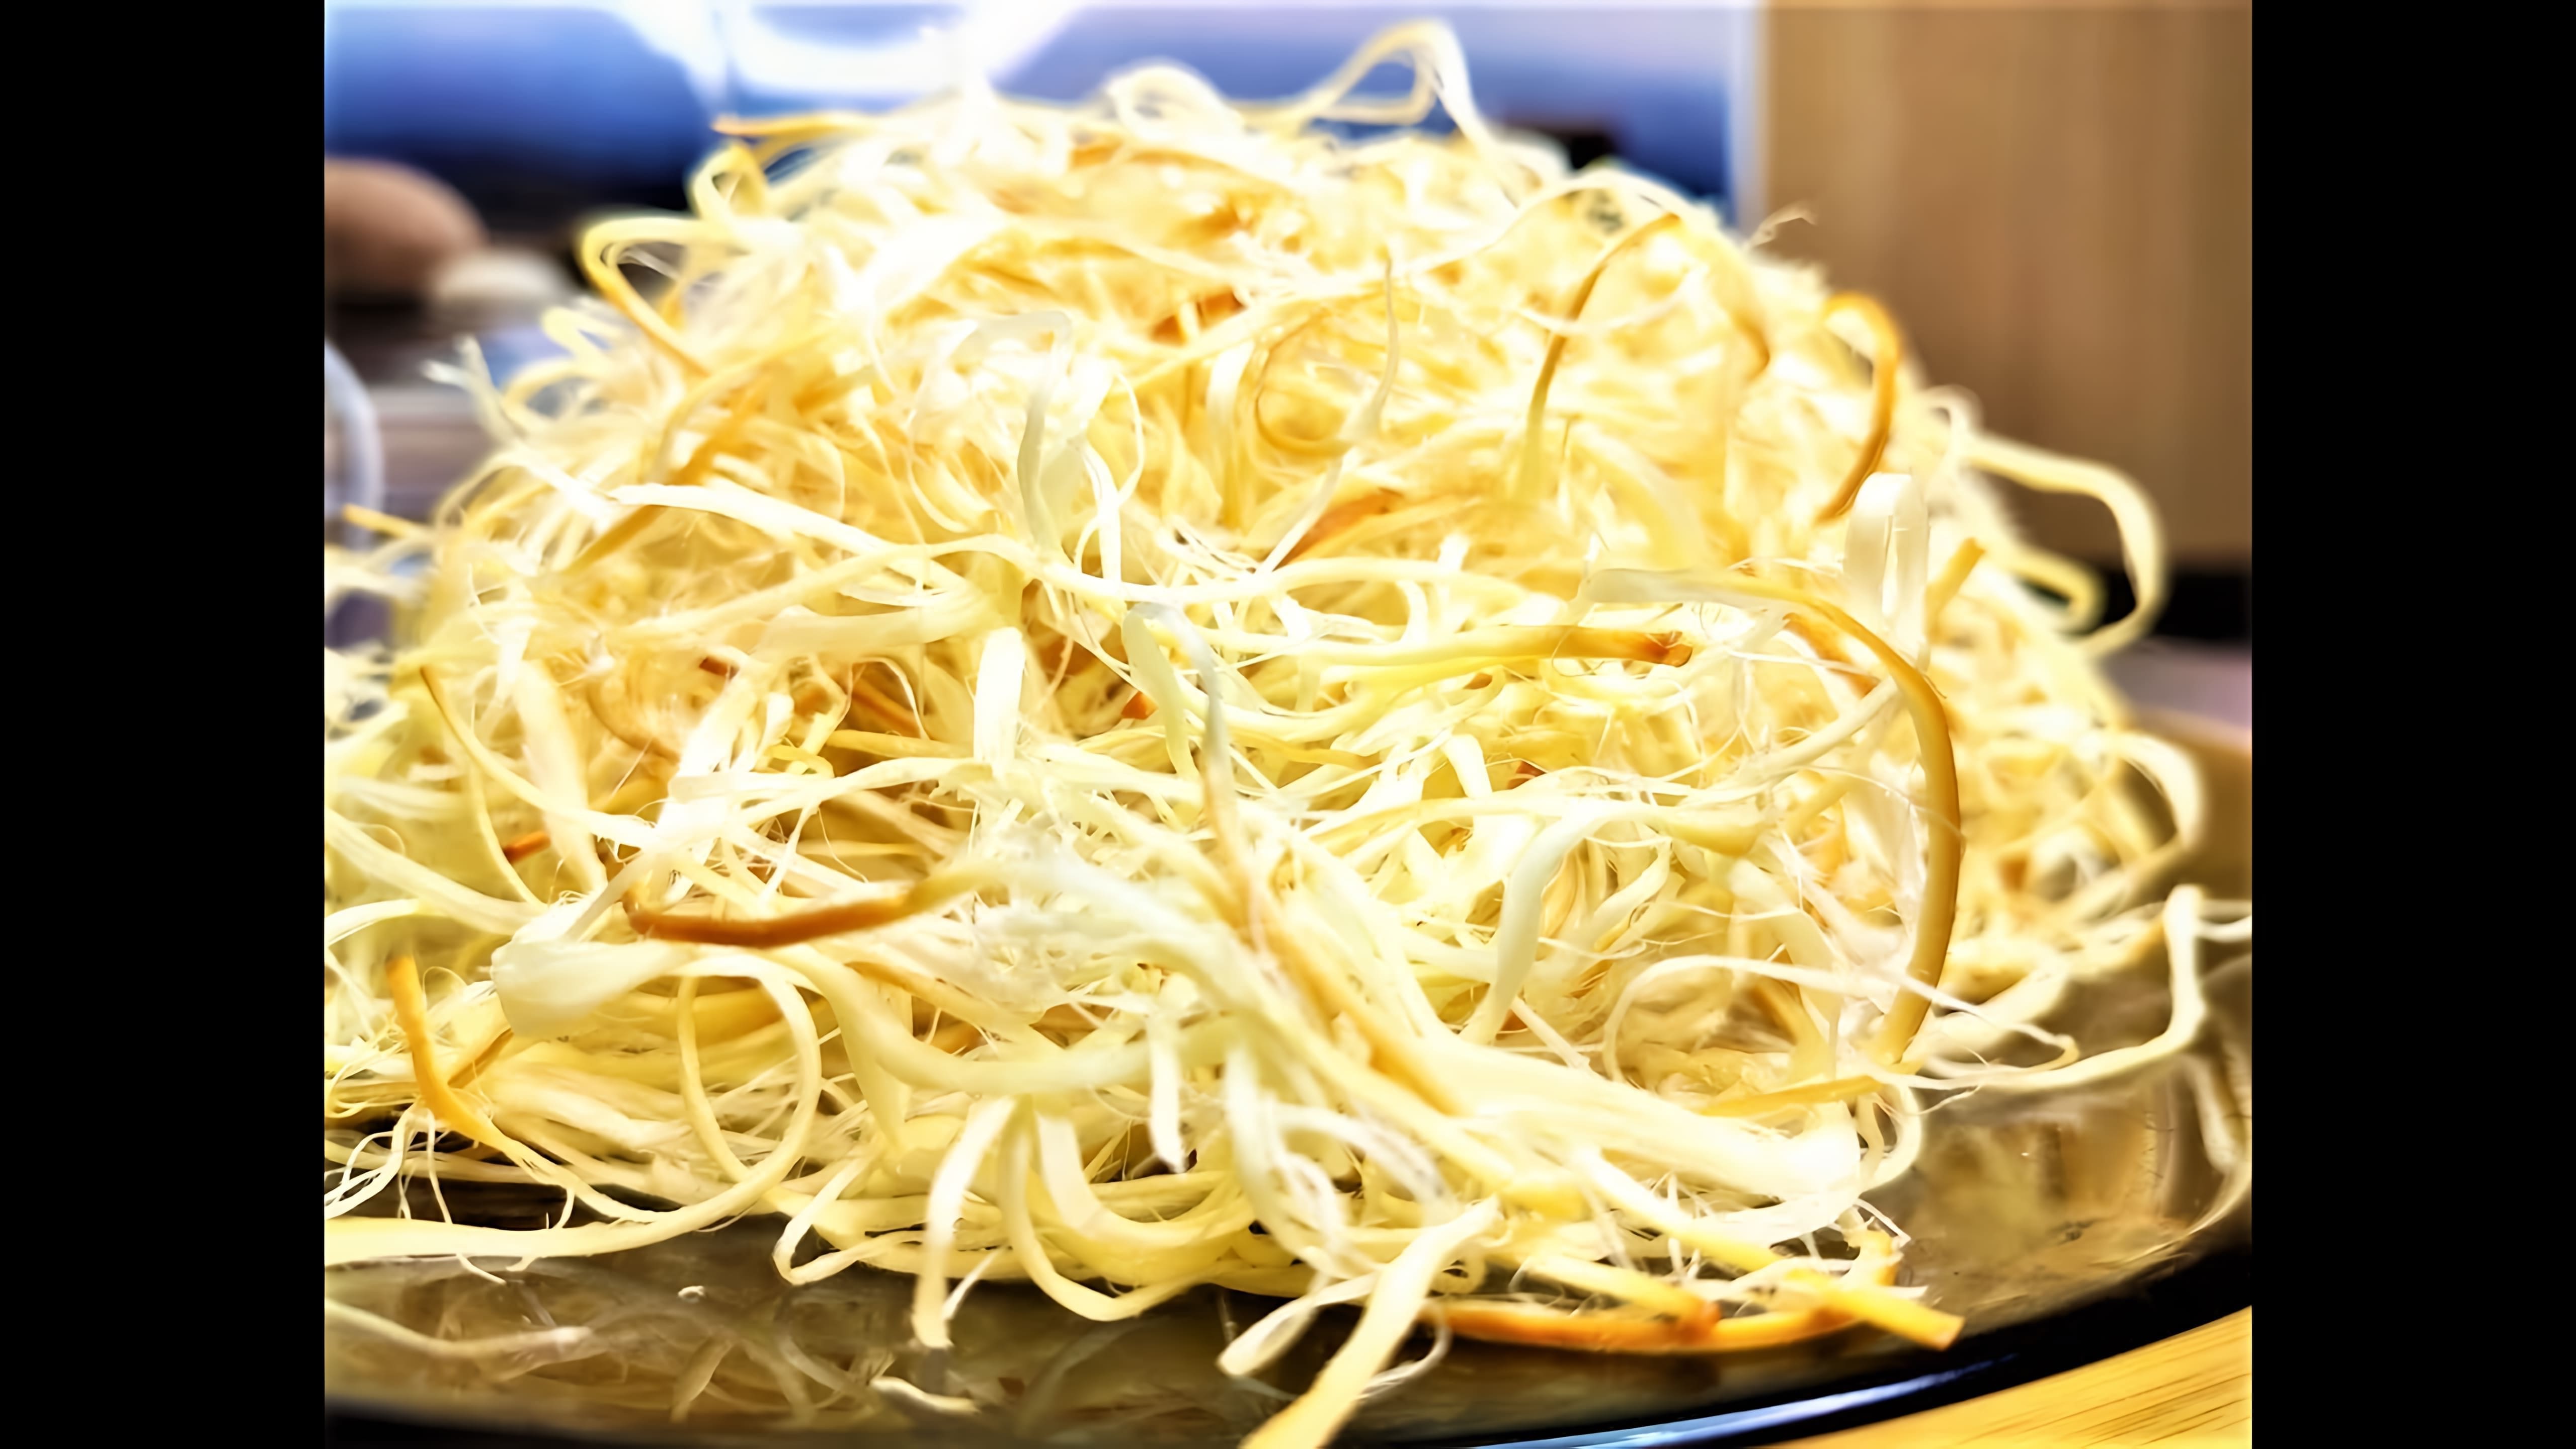 Супер жареный сыр "ЧЕЧИЛ" косичка - это видео-ролик, который показывает, как приготовить вкусный и оригинальный сыр косичка